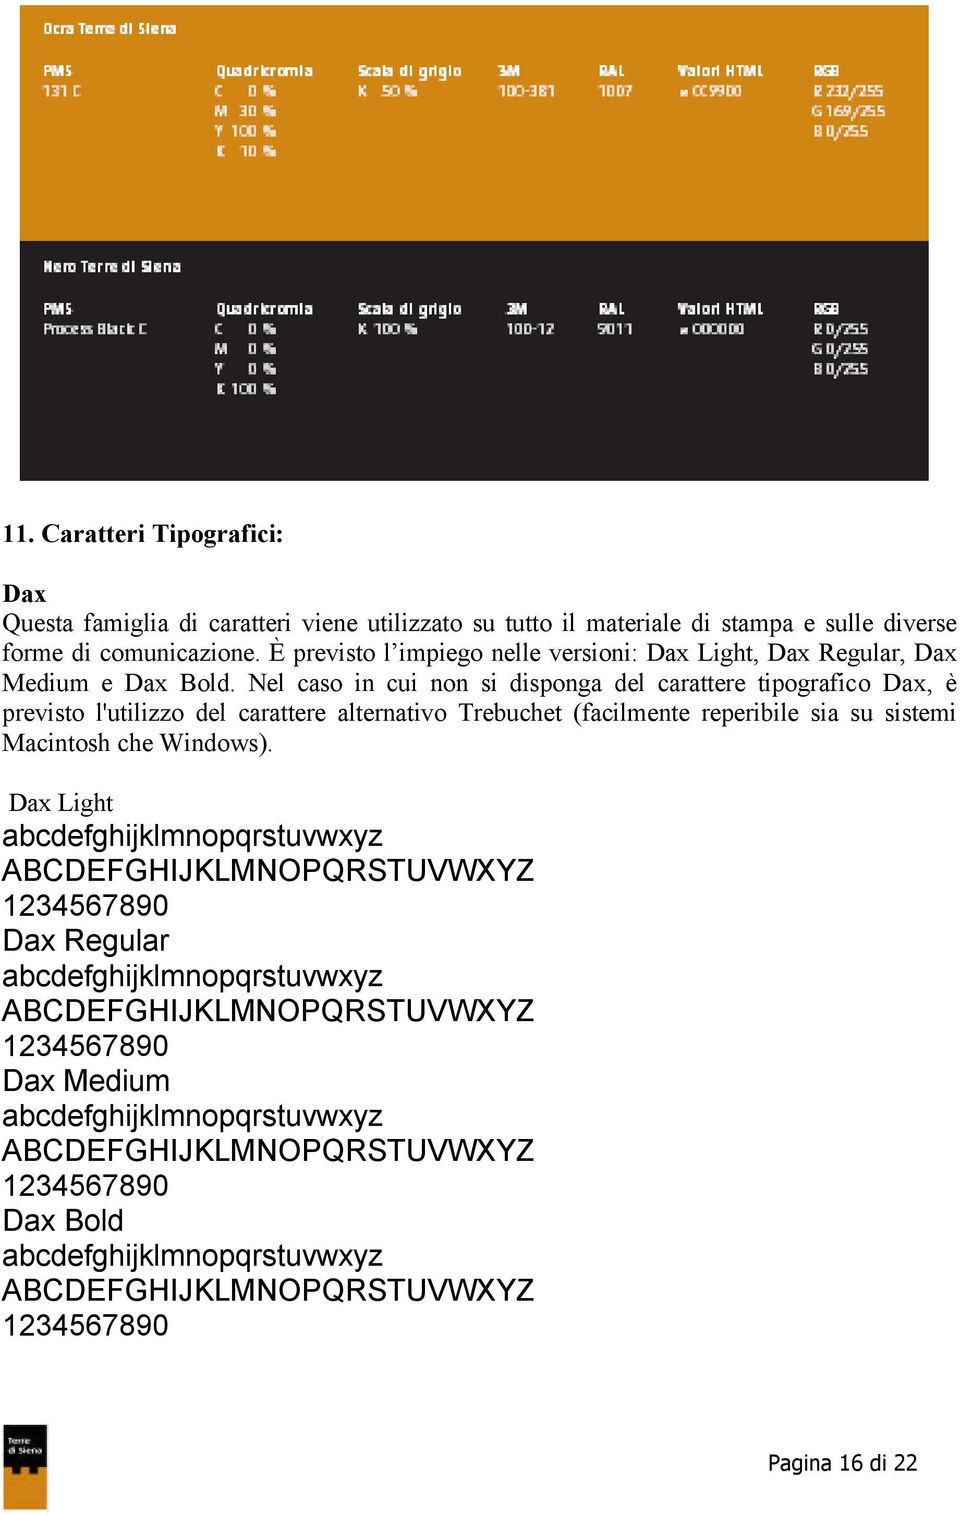 Nel caso in cui non si disponga del carattere tipografico Dax, è previsto l'utilizzo del carattere alternativo Trebuchet (facilmente reperibile sia su sistemi Macintosh che Windows).